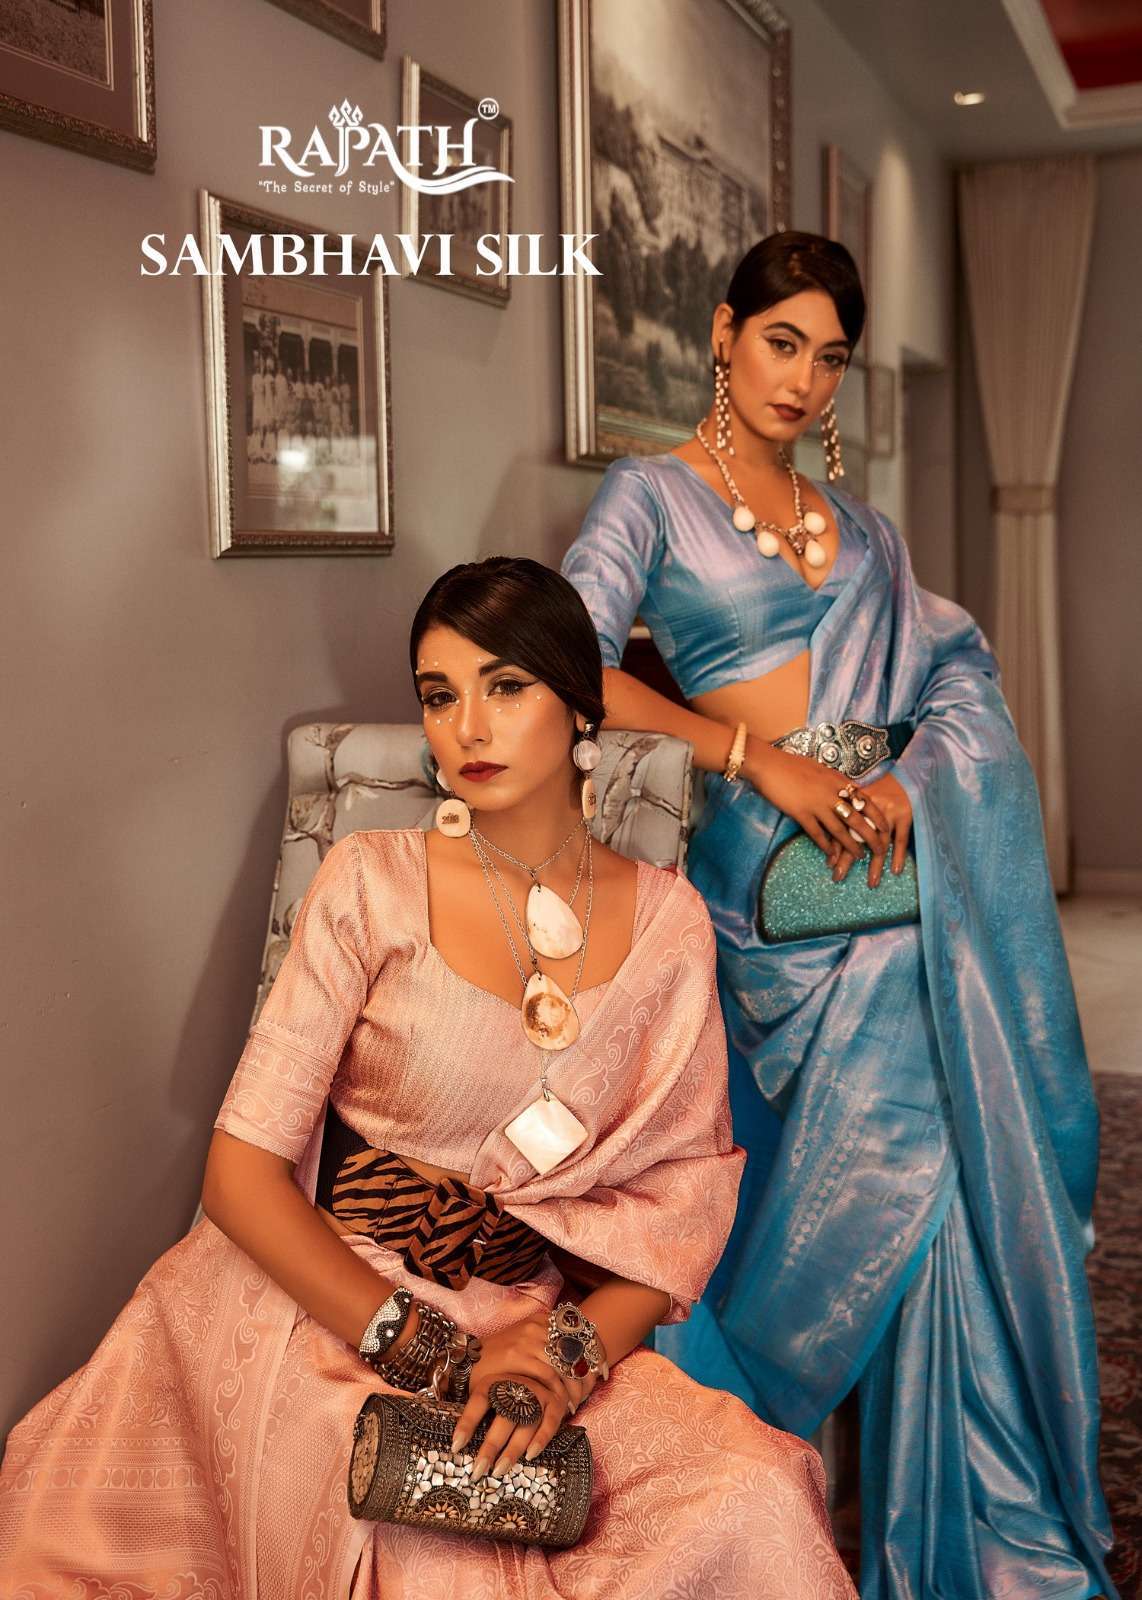 rajpath sambhavi silk series 152001-152006 Sattin Base Kanchivaram Silk saree